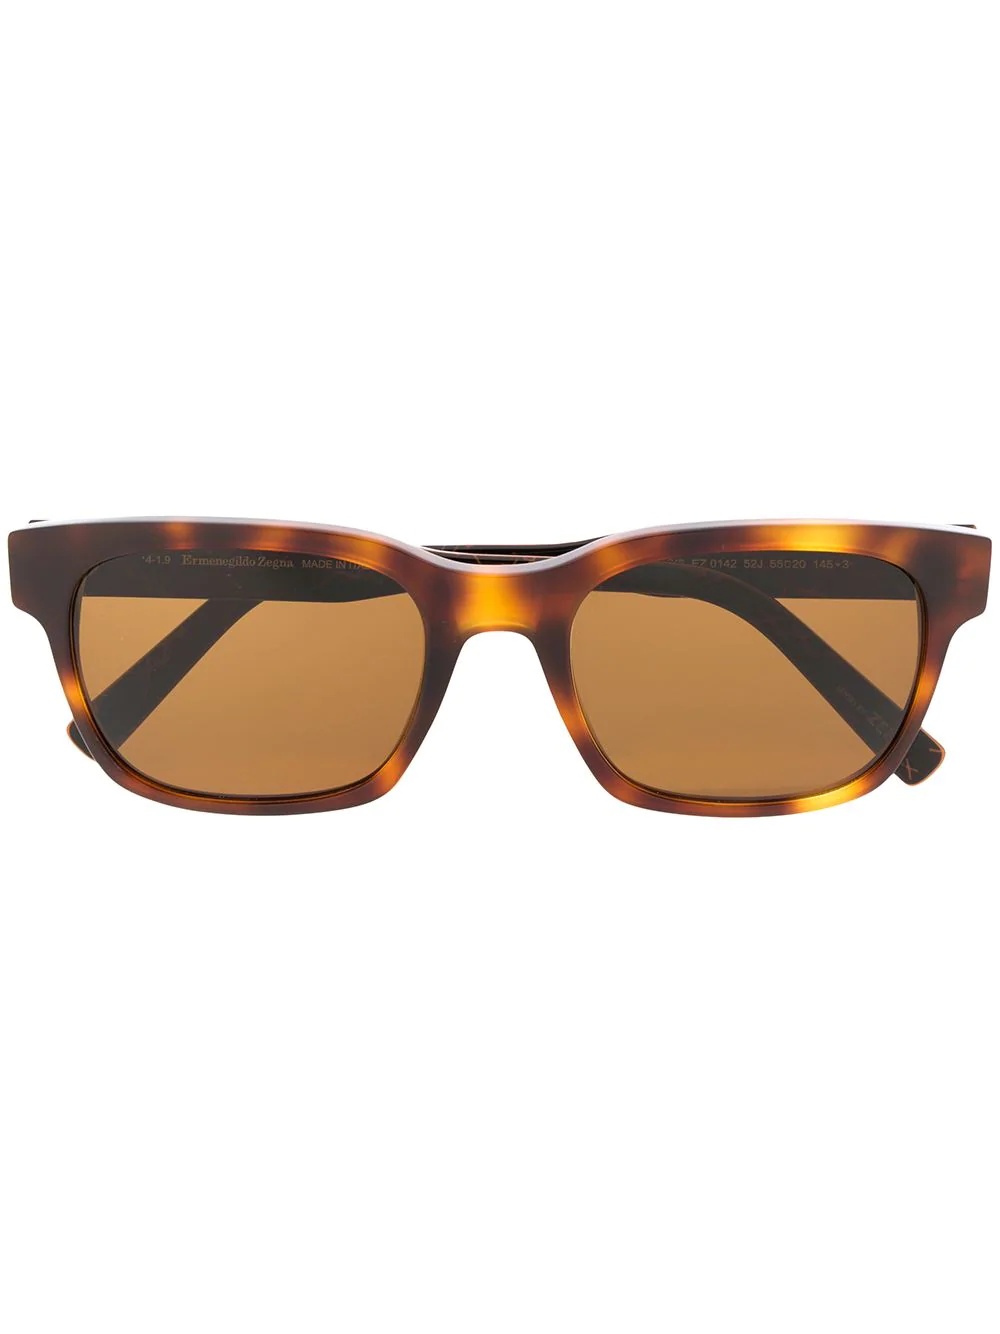 tortoiseshell square frame sunglasses - 1